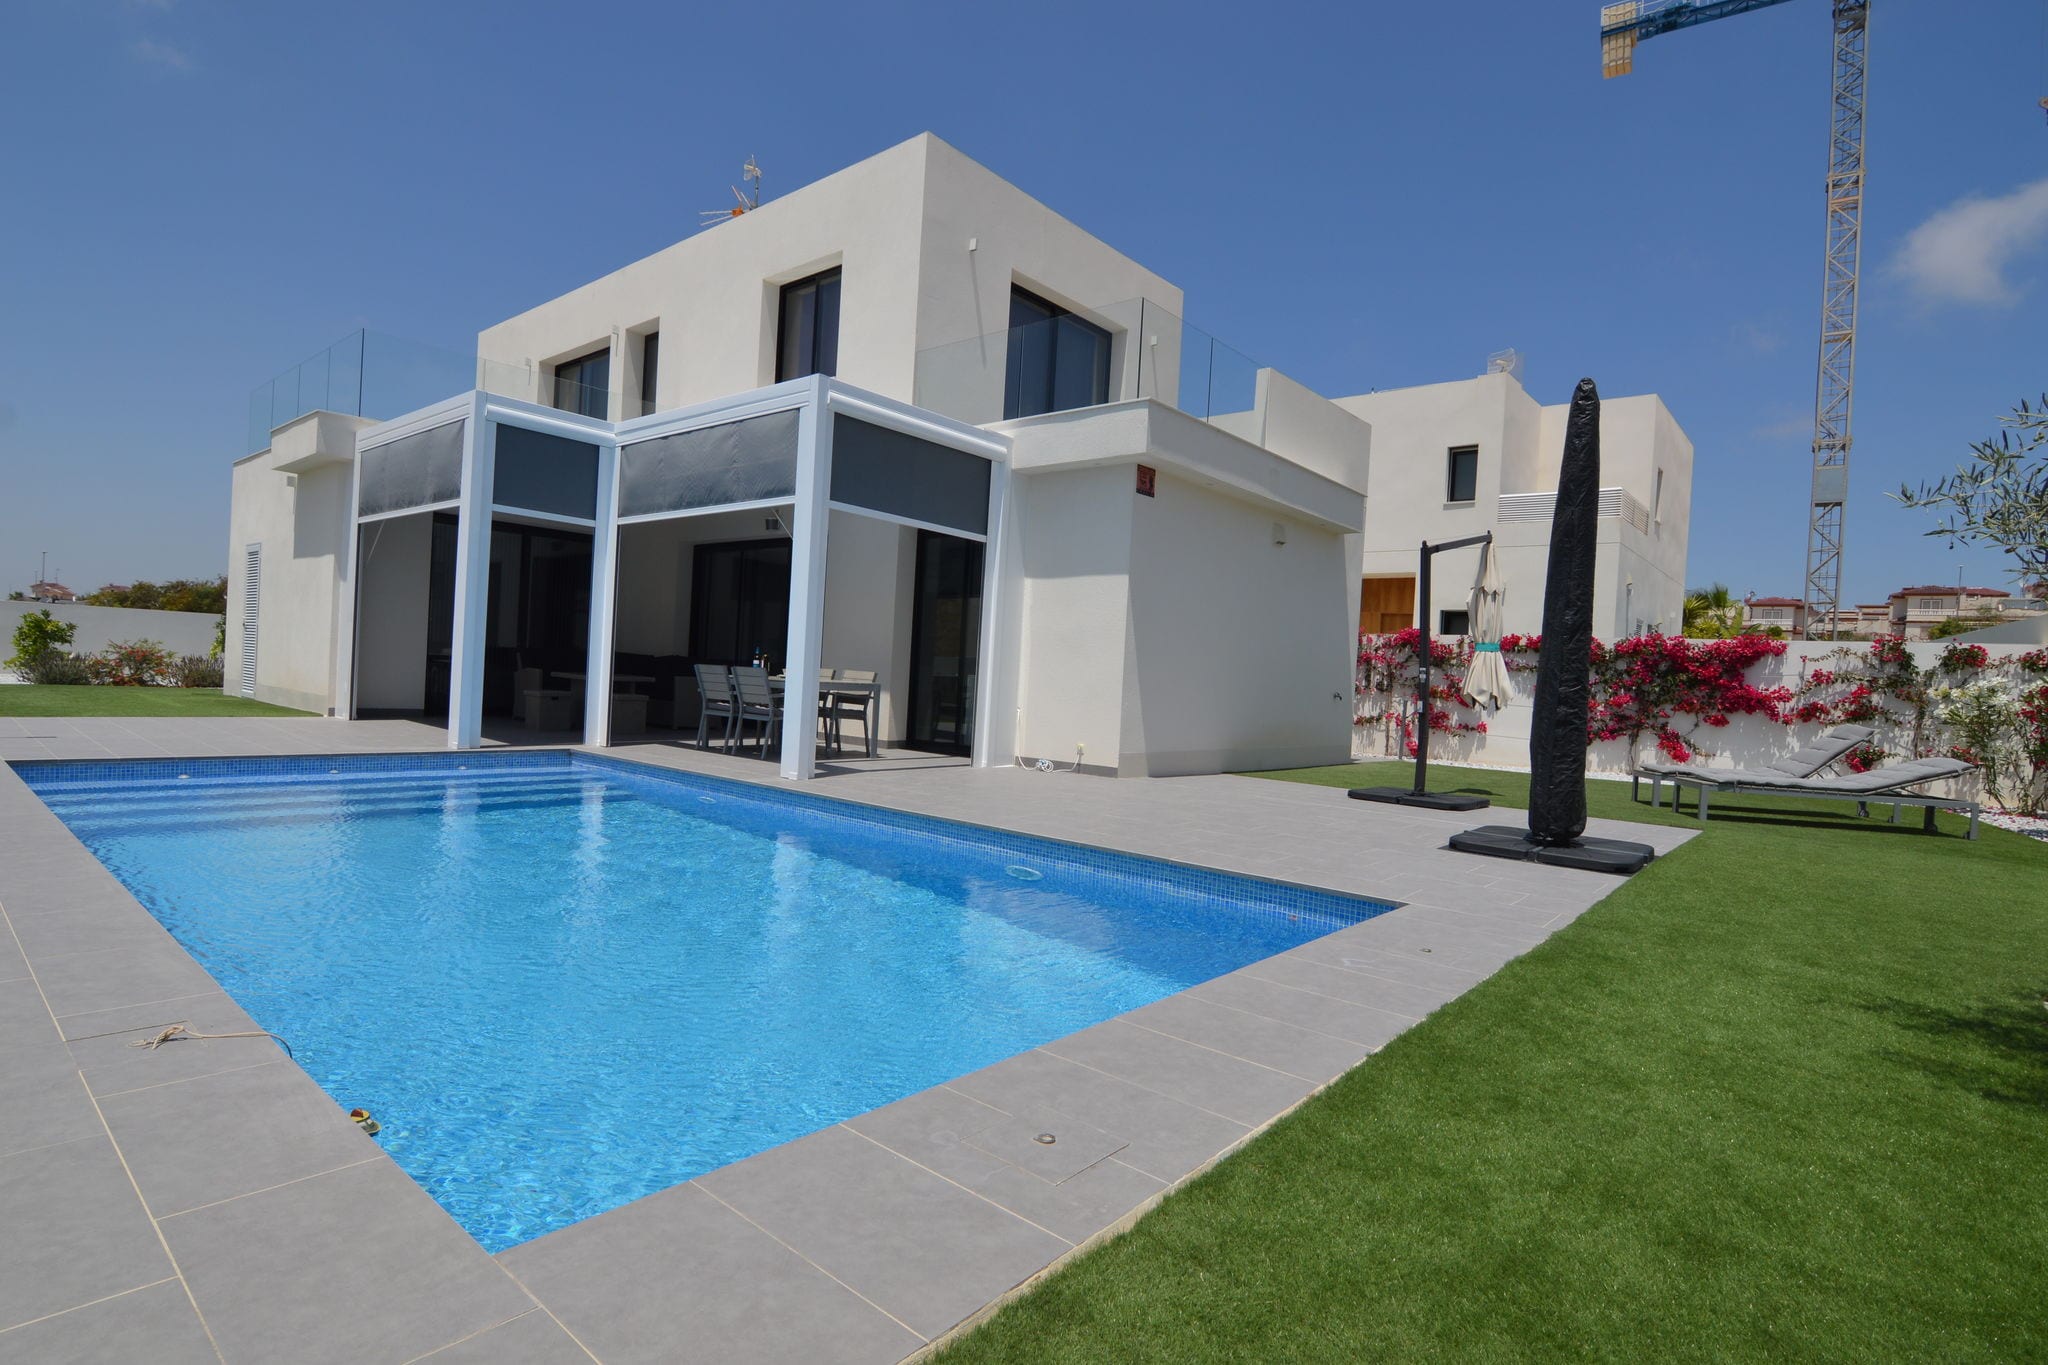 Moderne villa in San Fulgencio Valencia met privézwembad